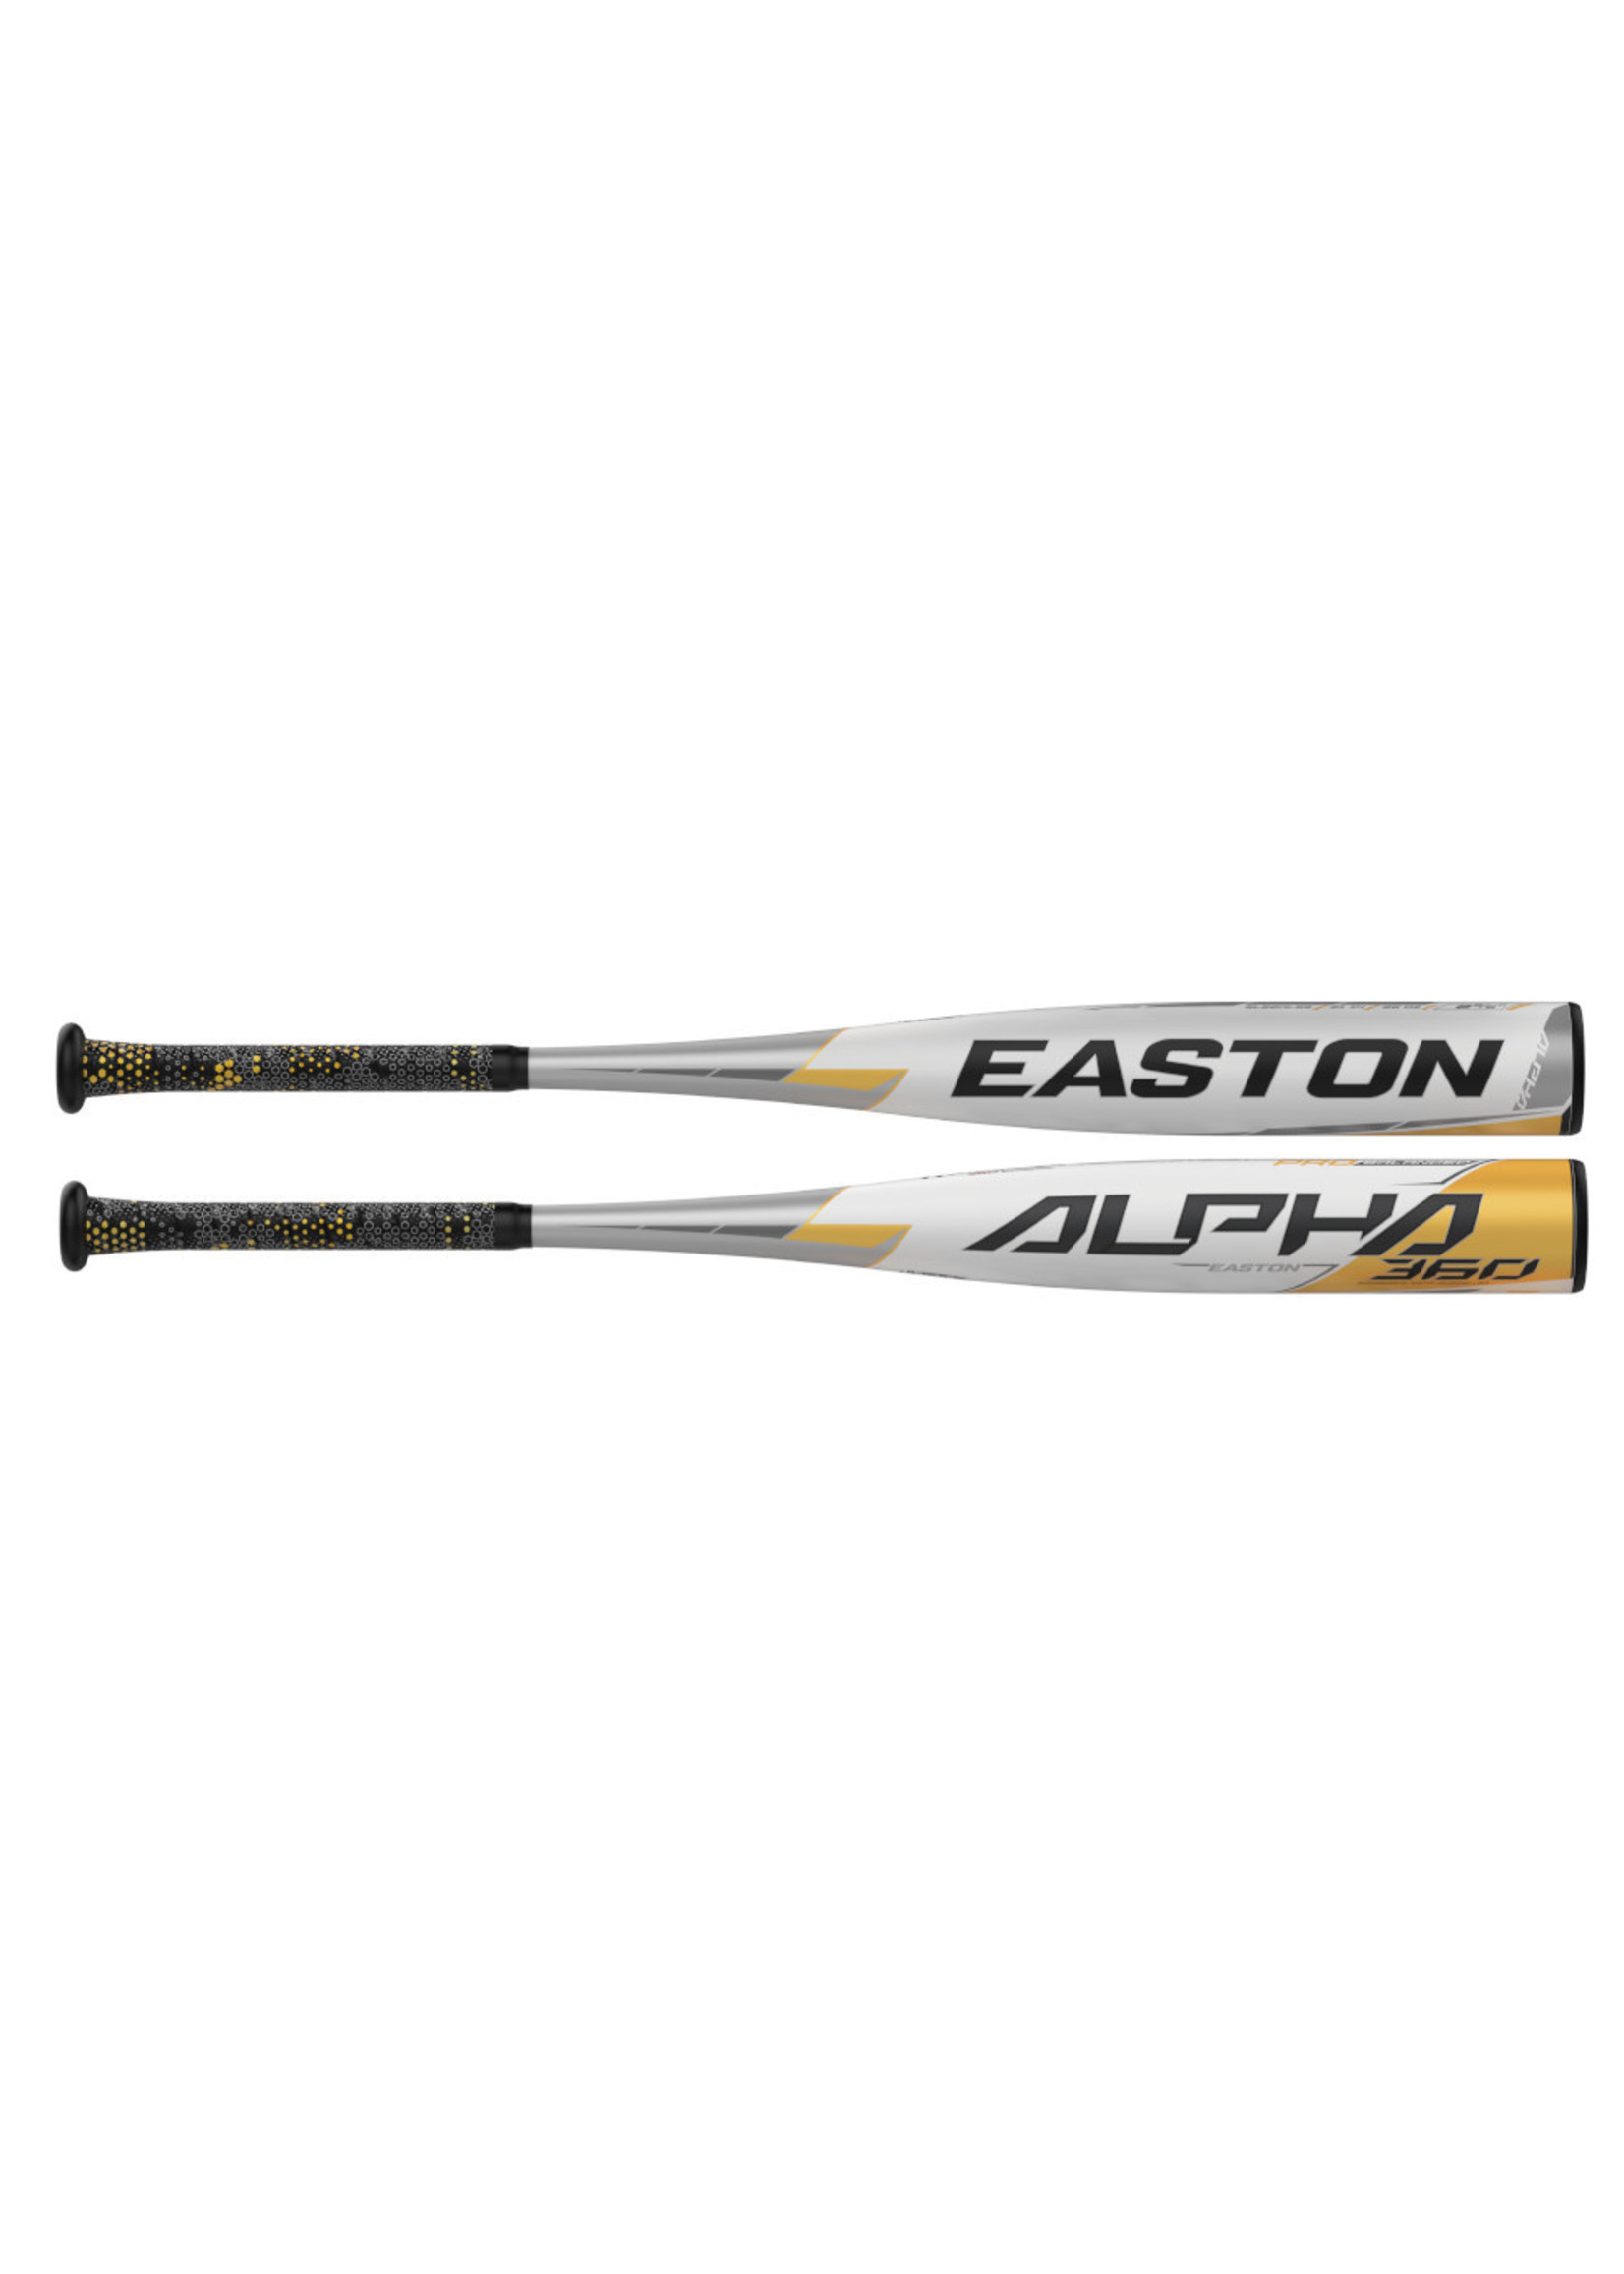 EASTON ALPHA 360 BASEBALL BAT -5 (2 5/8)